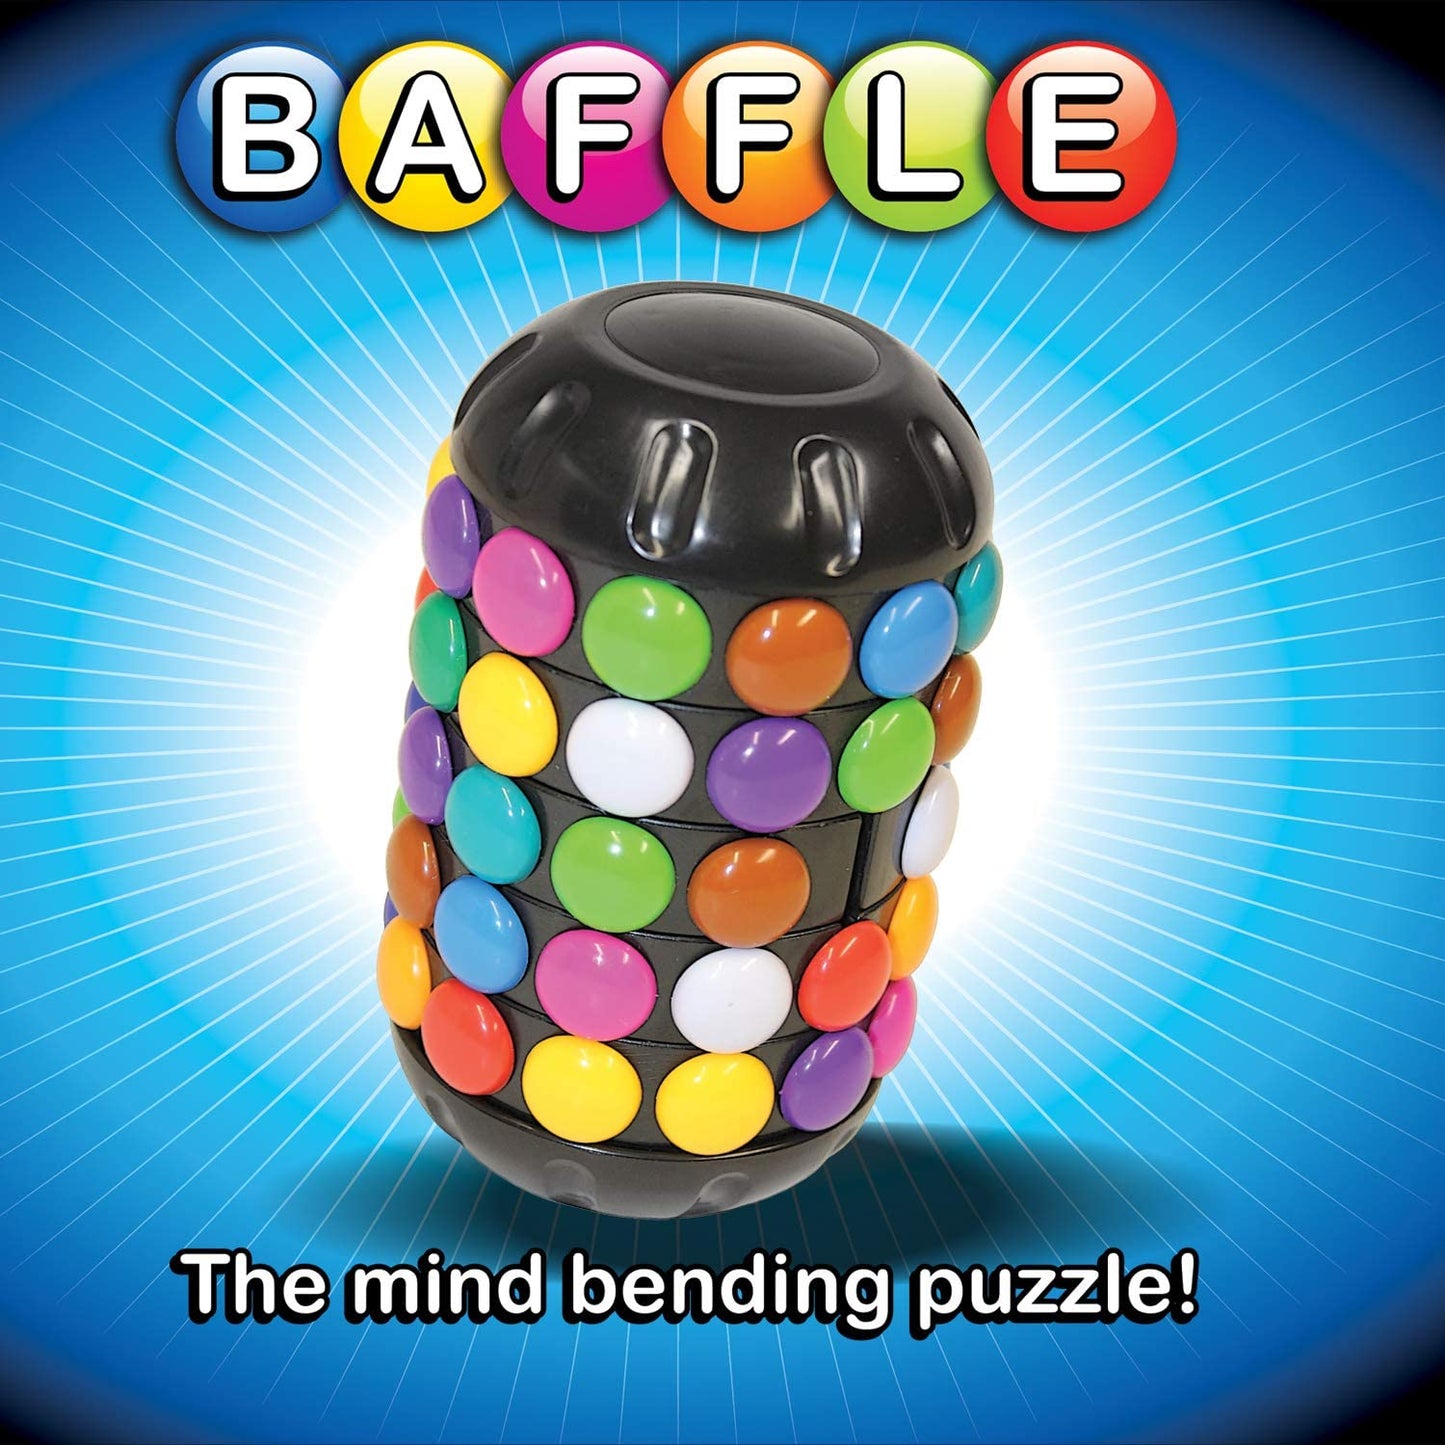 Baffle Puzzle